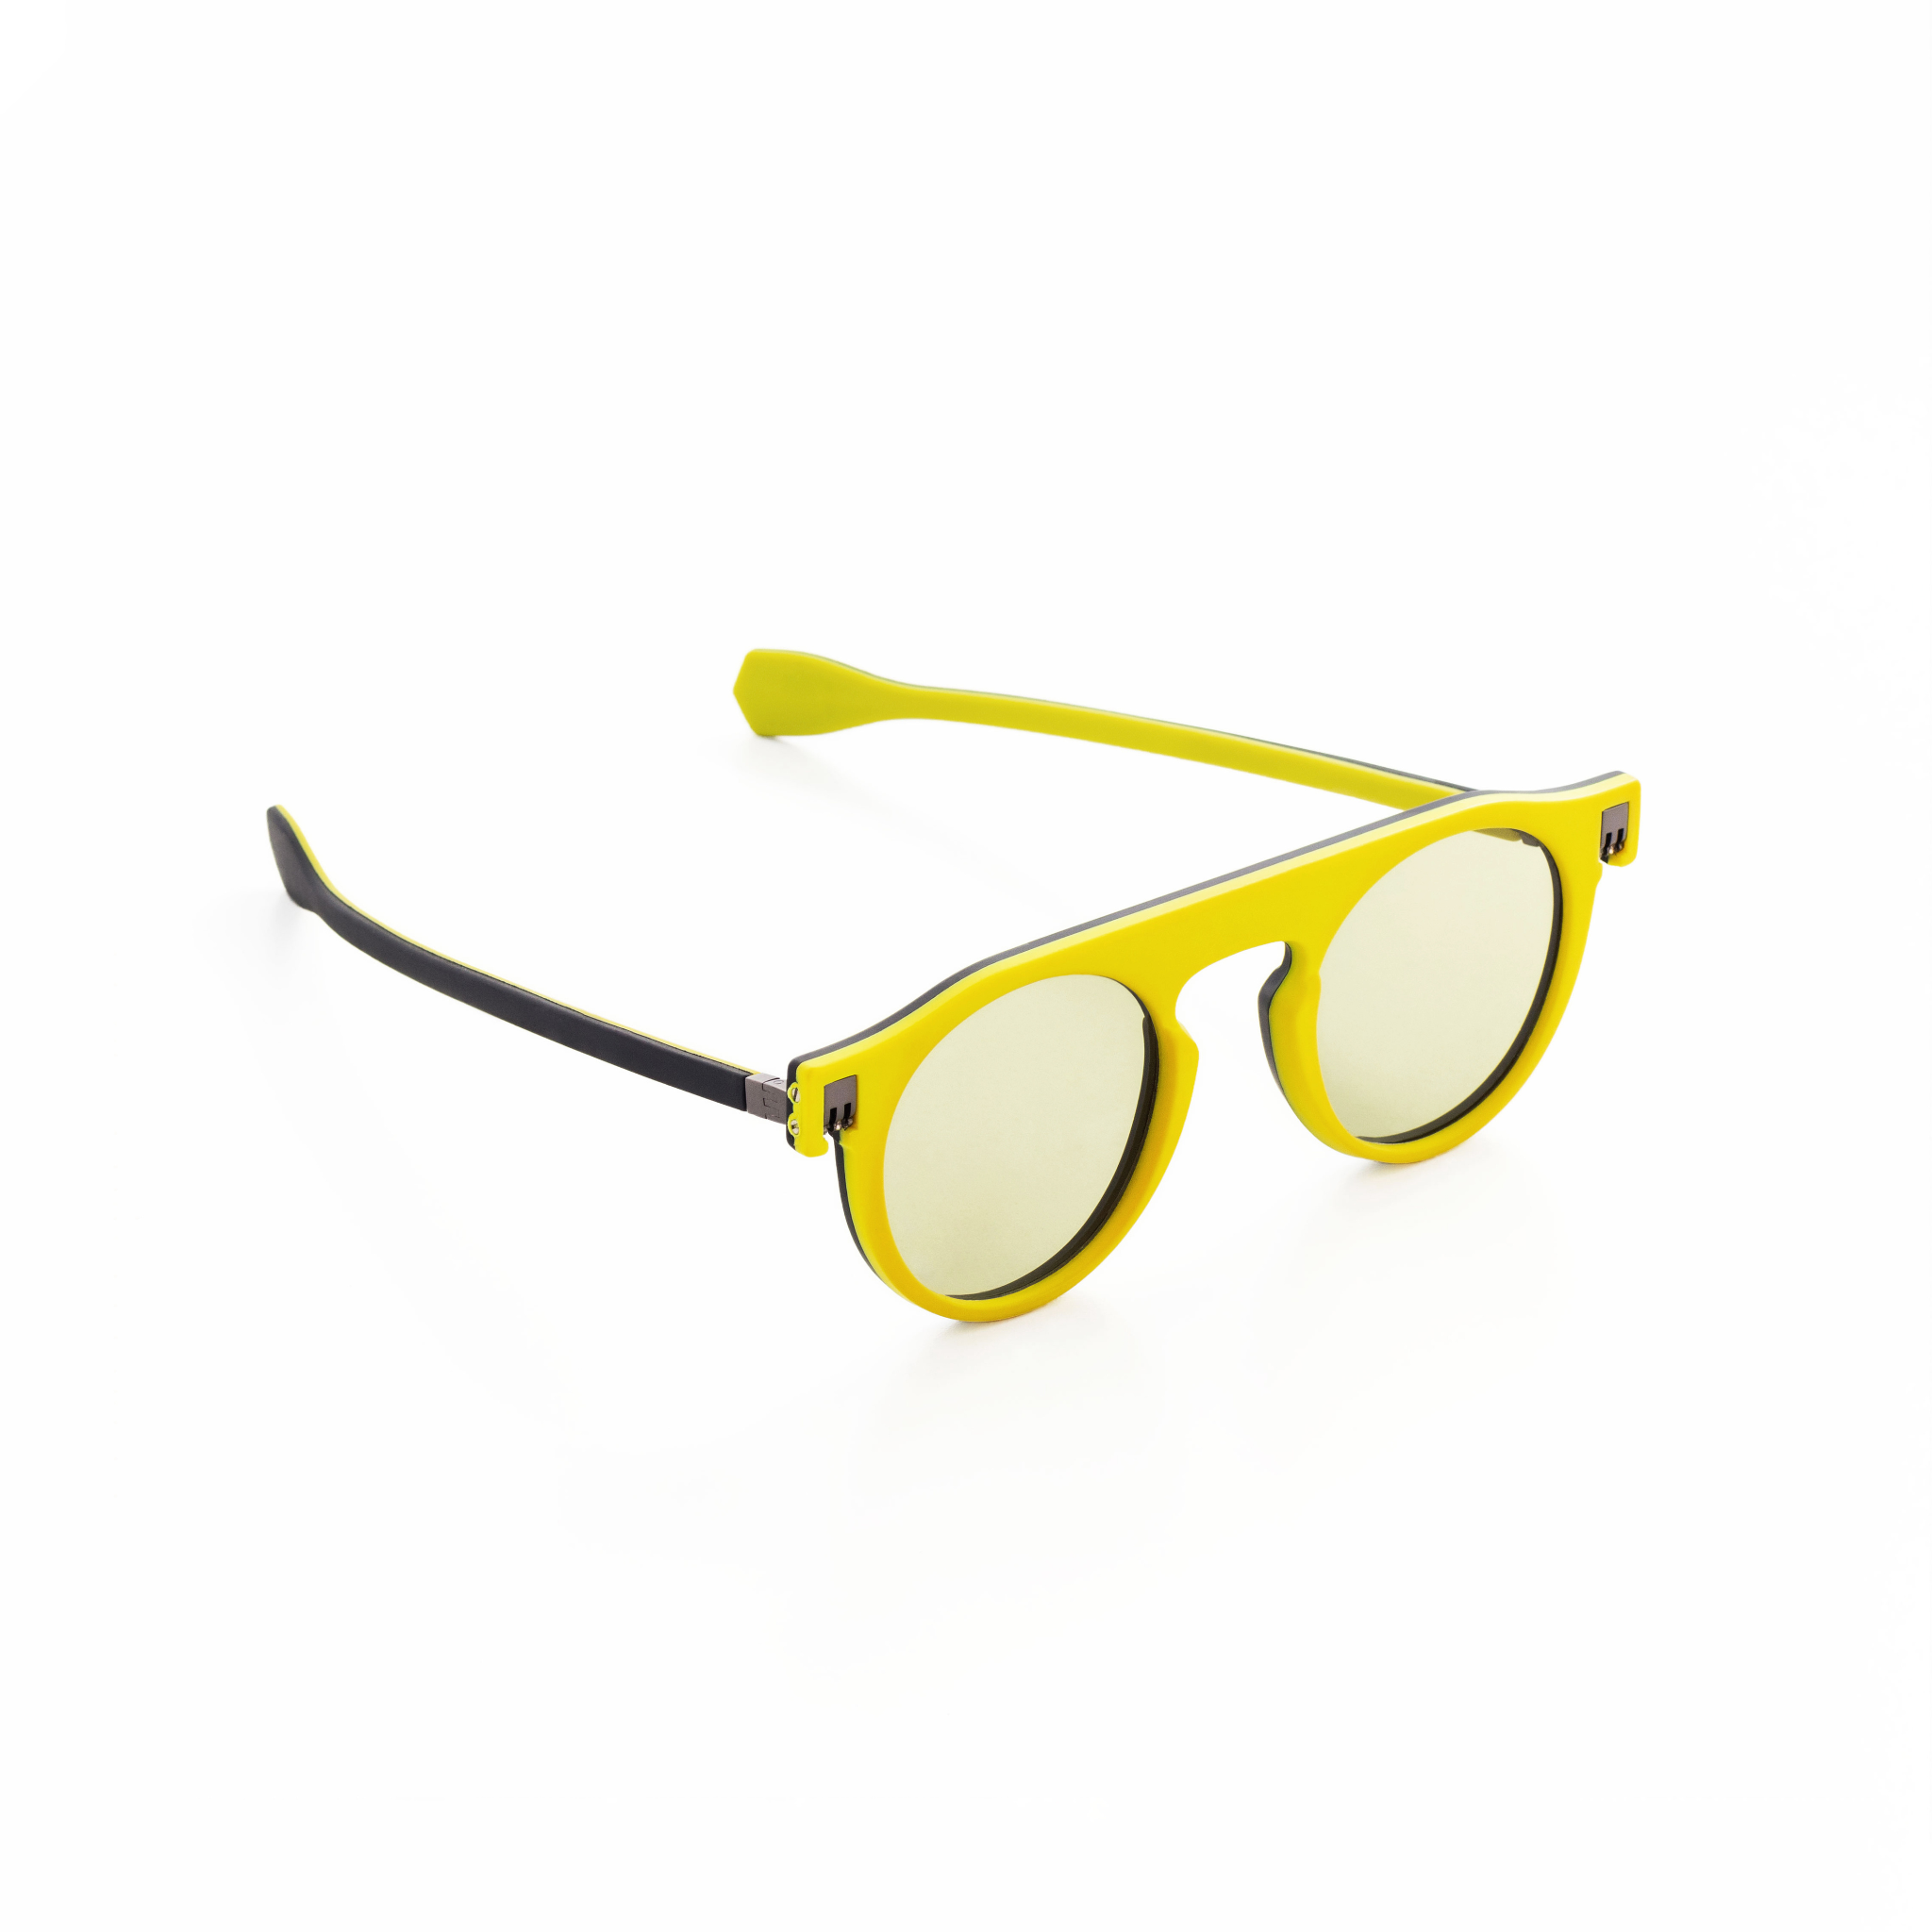 PEEQ – Reversible sunglasses – Marc-Aurélien Vivant